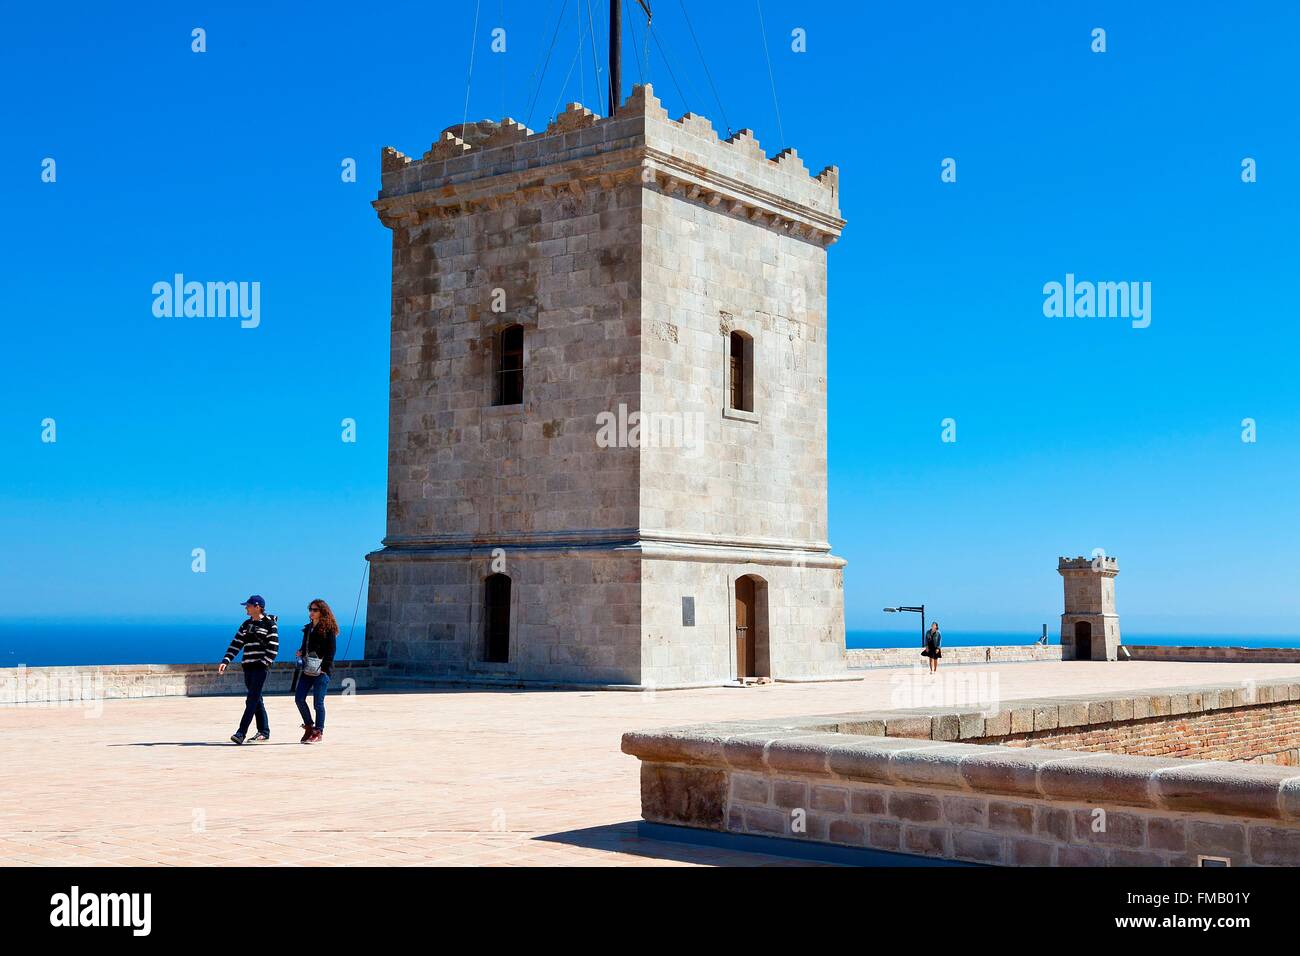 Espagne, Catalogne, Barcelone, château de Montjuic Banque D'Images